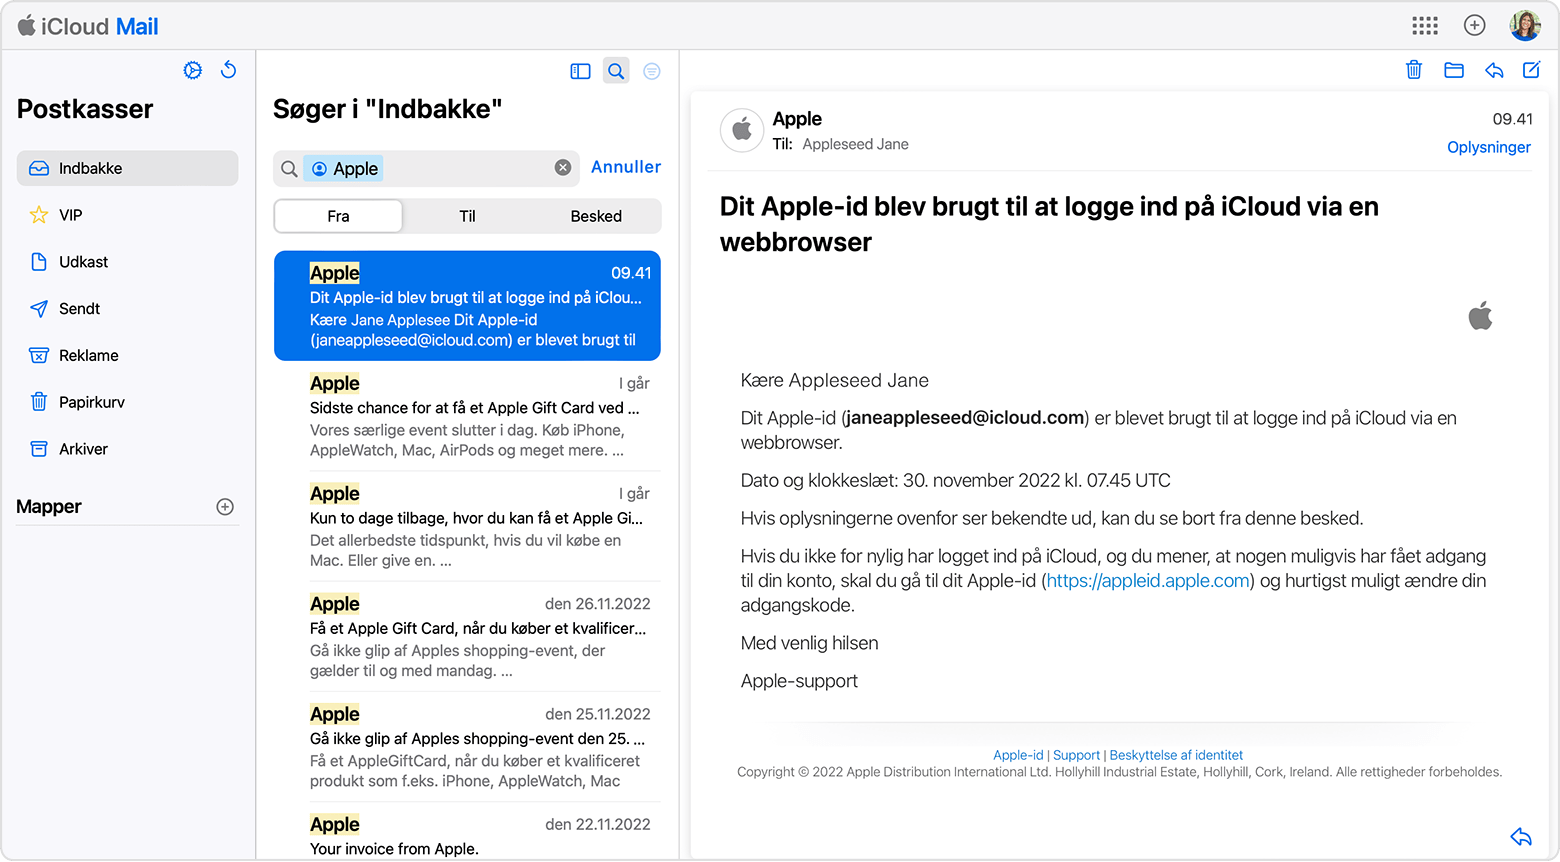 Find den e-mailadresse, der er knyttet til dit Apple-id, ved at søge efter e-mails fra Apple